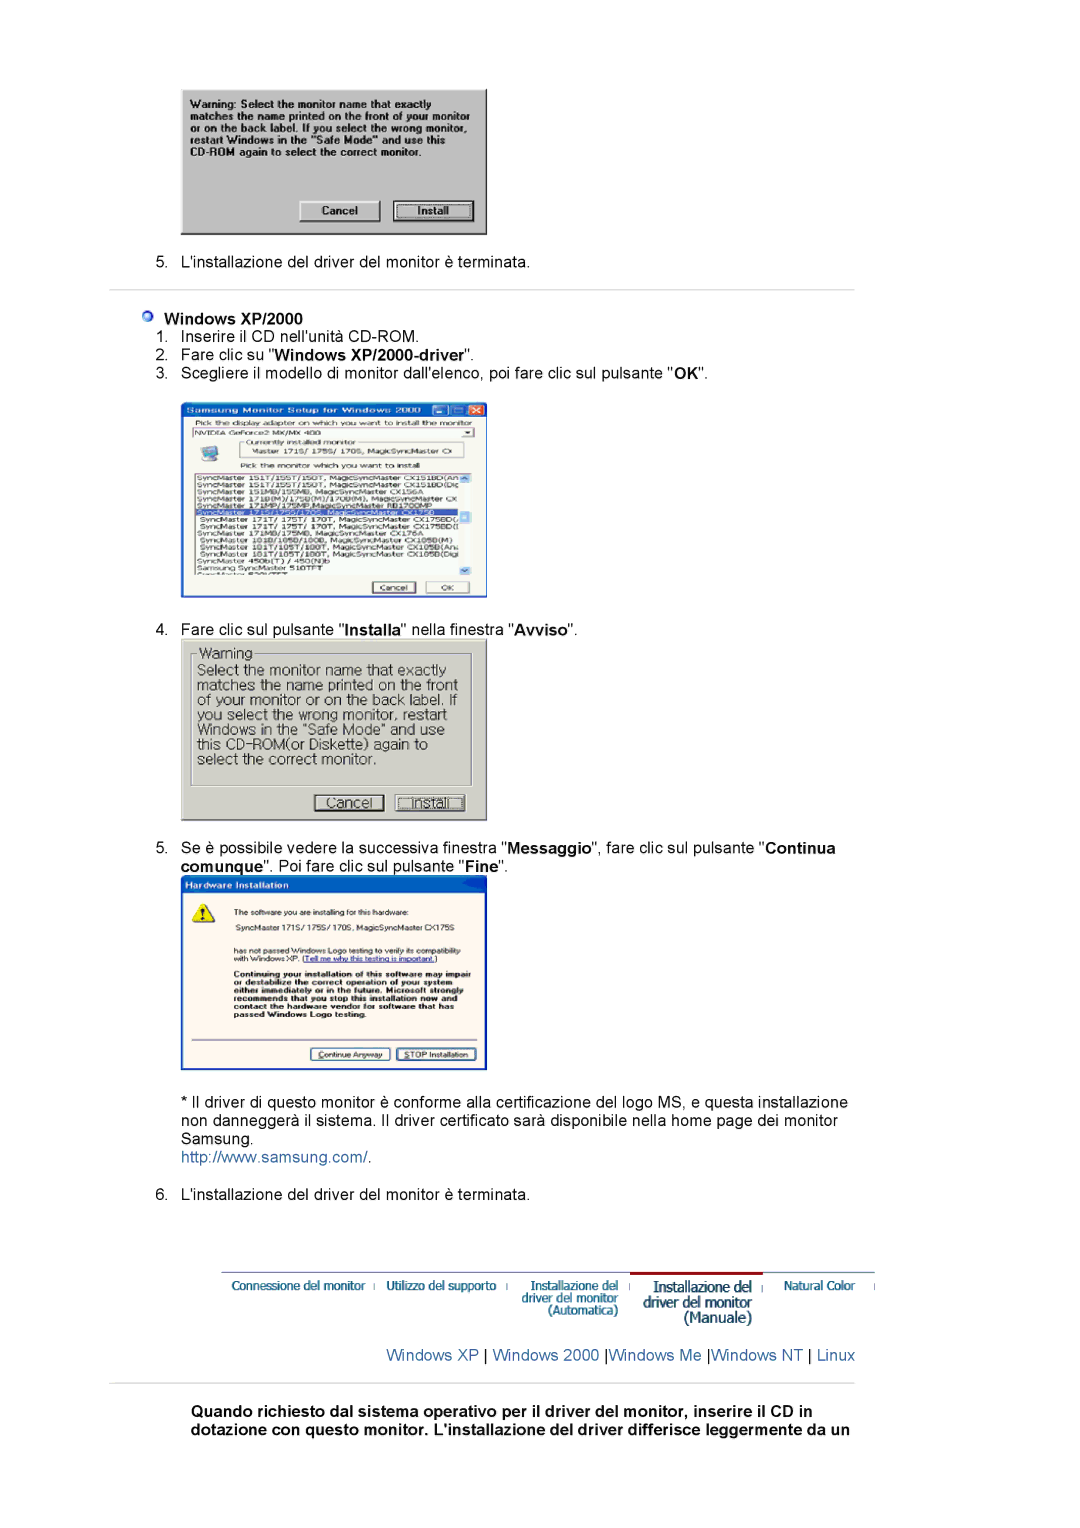 Samsung MJ17CSKS/EDC manual Fare clic su Windows XP/2000-driver 